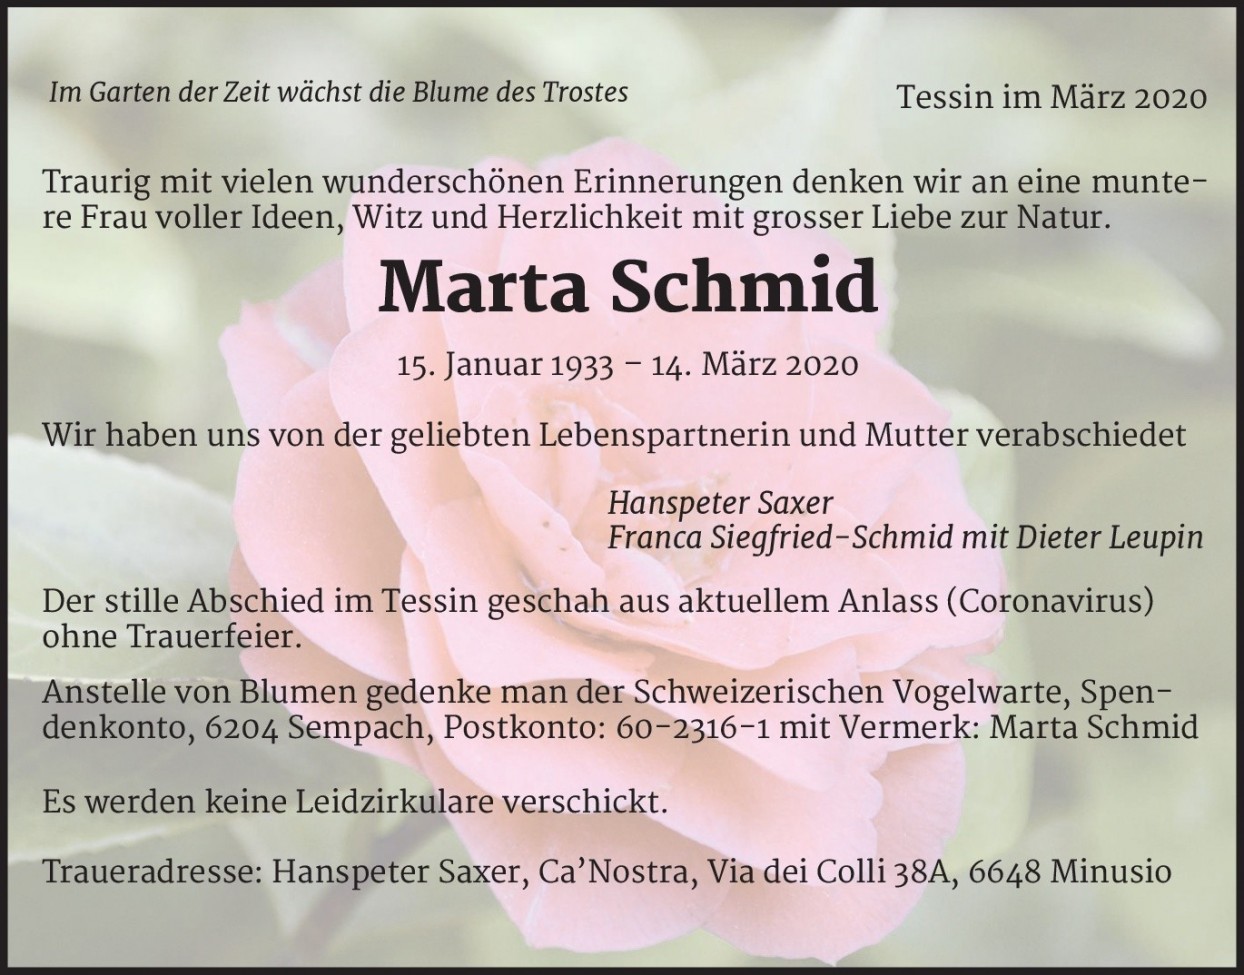 Marta Schmid